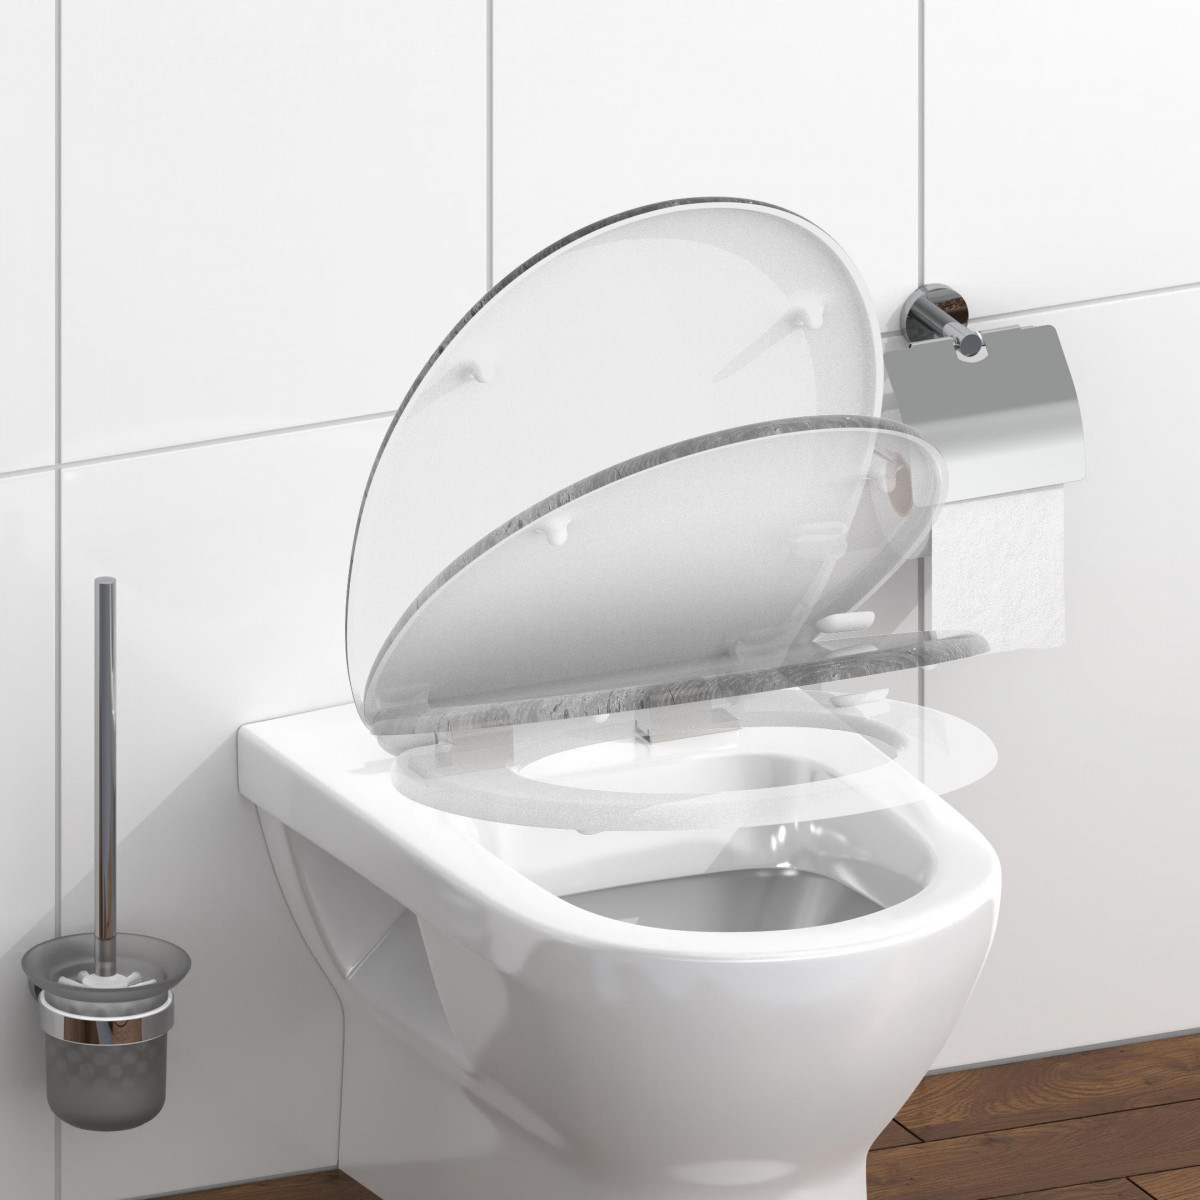 Duroplast WC-Sitz Industrial Grey, mit Absenkautomatik